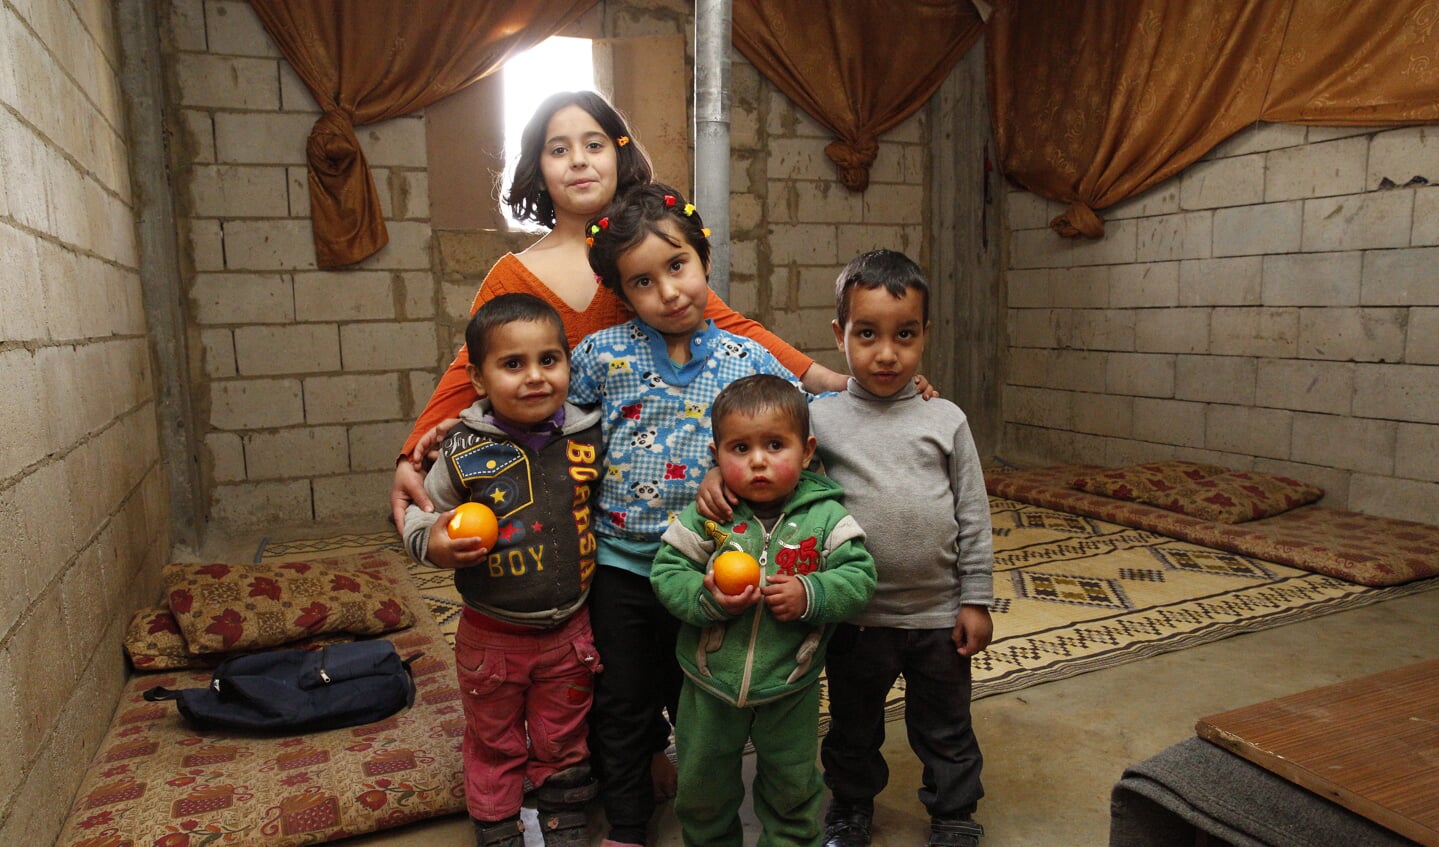 Fotograaf Arie Kievit fotografeerde vluchtelingen in Syrië en in de opvang in Bussum. | Foto: Arie Kievit 